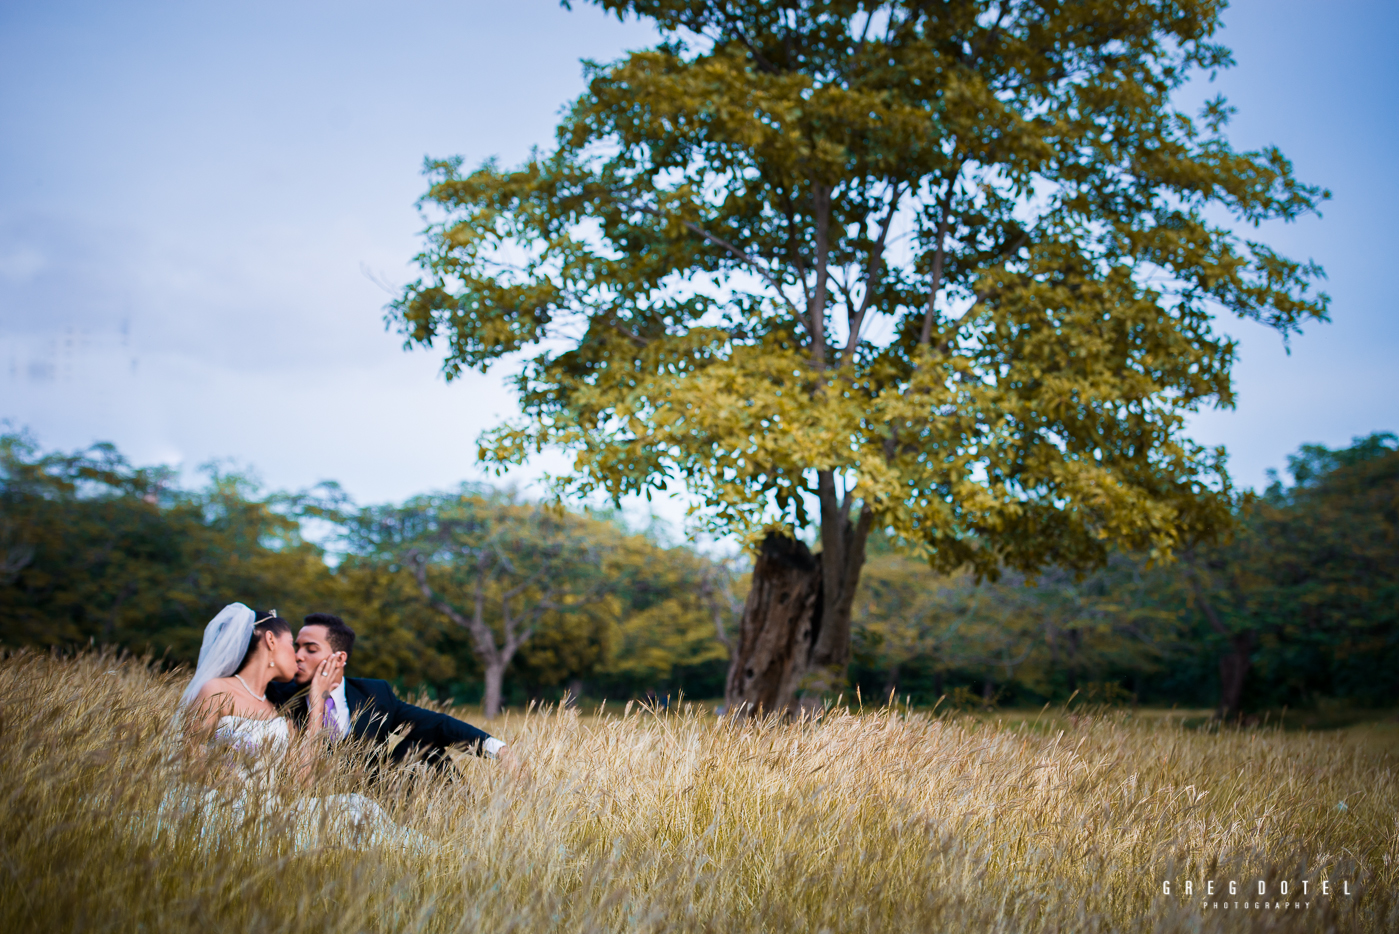 sesion de fotos de novios en santo domingo republica dominicana por el fotografo dominicano greg dotel photography en el parque mirador sur